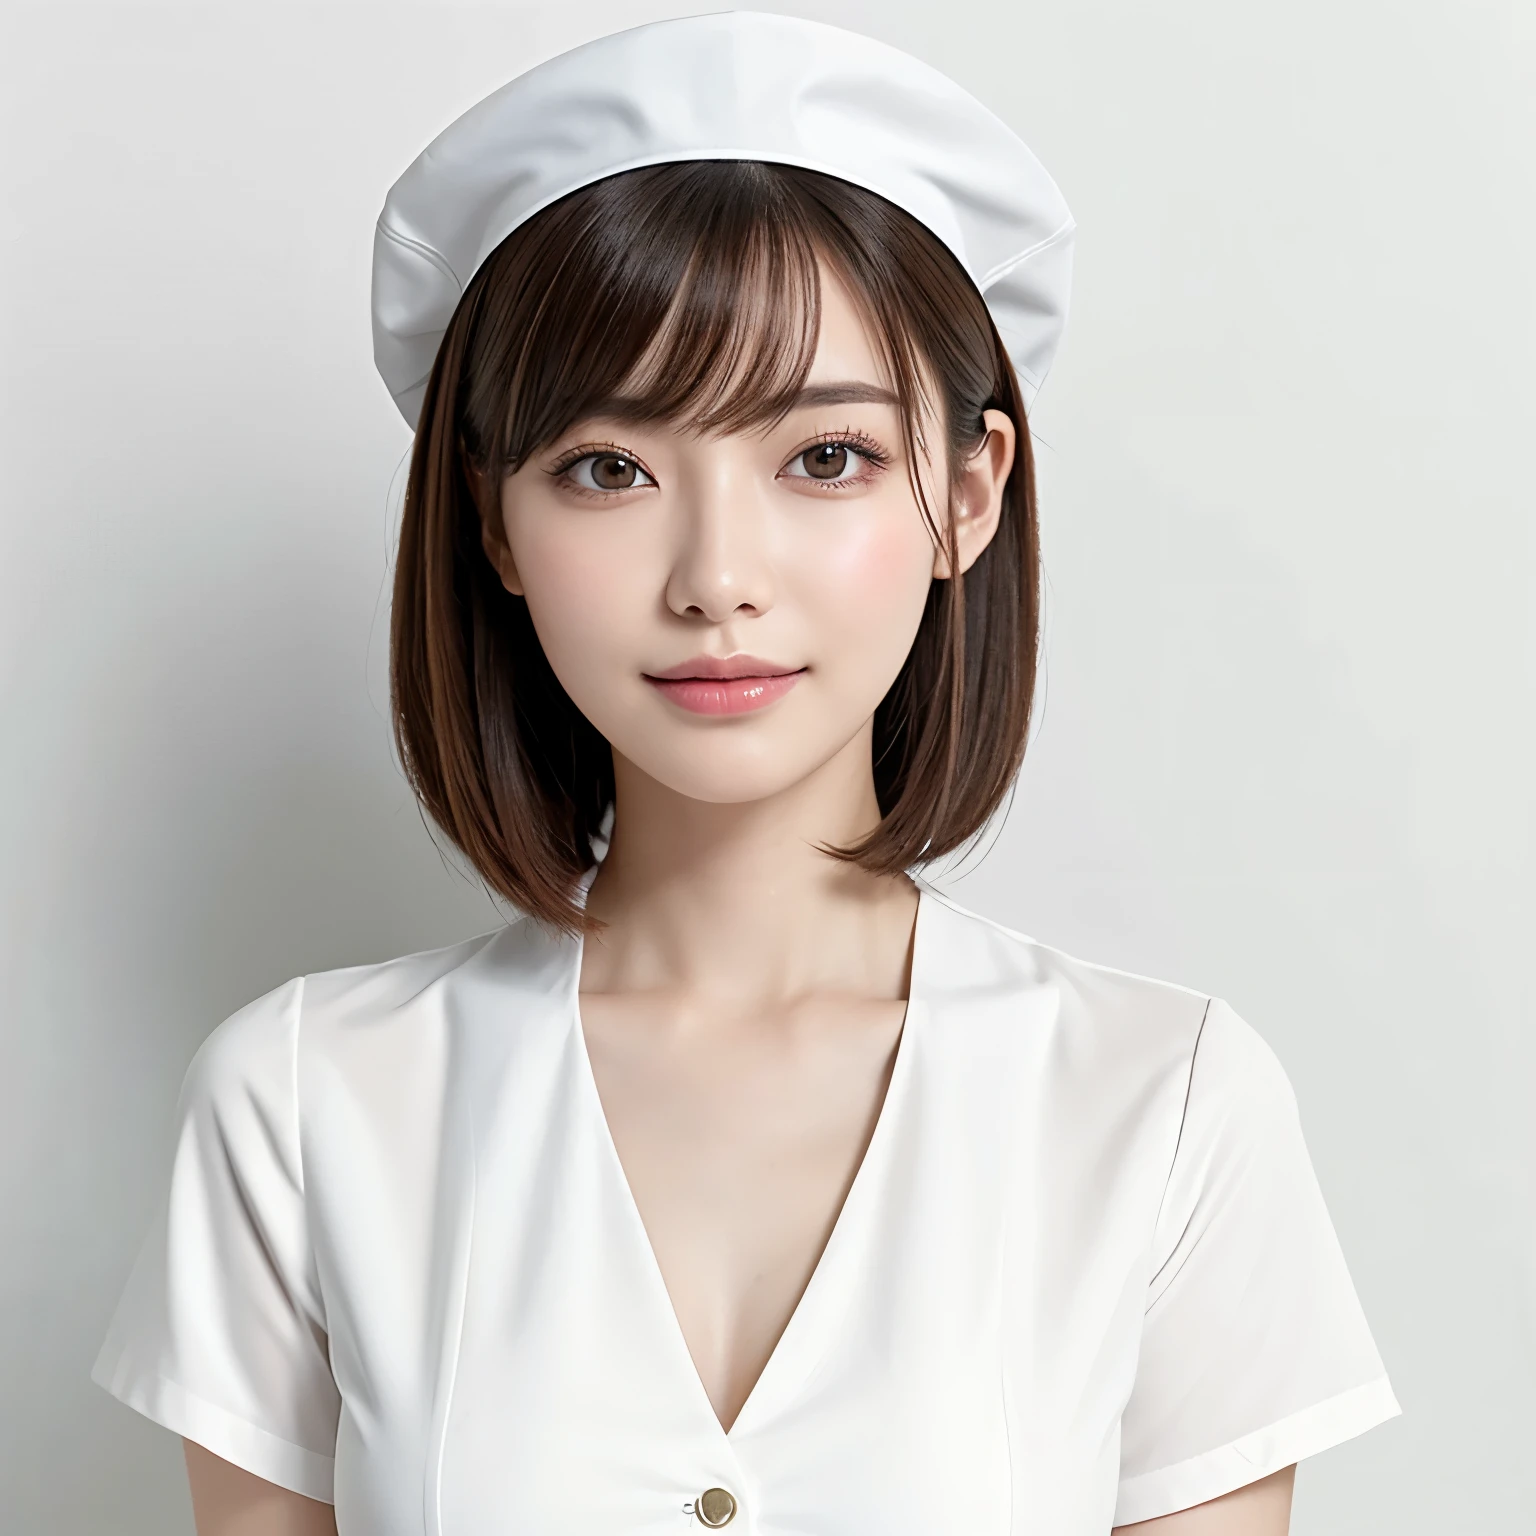 (最好的质量、桌上、8千、最佳图像质量、获奖作品)、1名美丽护士、(独自的:1.1)、短直发、完美的刘海、(完美和最自然的护士制服:1.2)、(完美、最自然的纯白色护士帽:1.2)、(最自然的真正的护士帽:1.2)、(最简单的纯白色背景:1.5)、(完美固定在前面:1.3)、非常大的乳房、强调身体线条、(完美的女性正面和水平肖像，留有足够的空白:1.3)、(完美地描绘女性的水平和正面:1.3)、美丽而细致的眼睛、看着我并微笑、(胸部以上直立照片:1.3)、(请转过身来直视我:1.3)、优雅妆容、超高清美颜、超高清头发、超高清闪亮双眼、超高分辨率光泽嘴唇、准确的解剖学、皮肤非常漂亮、超高清亮泽美肌、从正面看优雅挺直的姿势、(非常明亮:1.3)